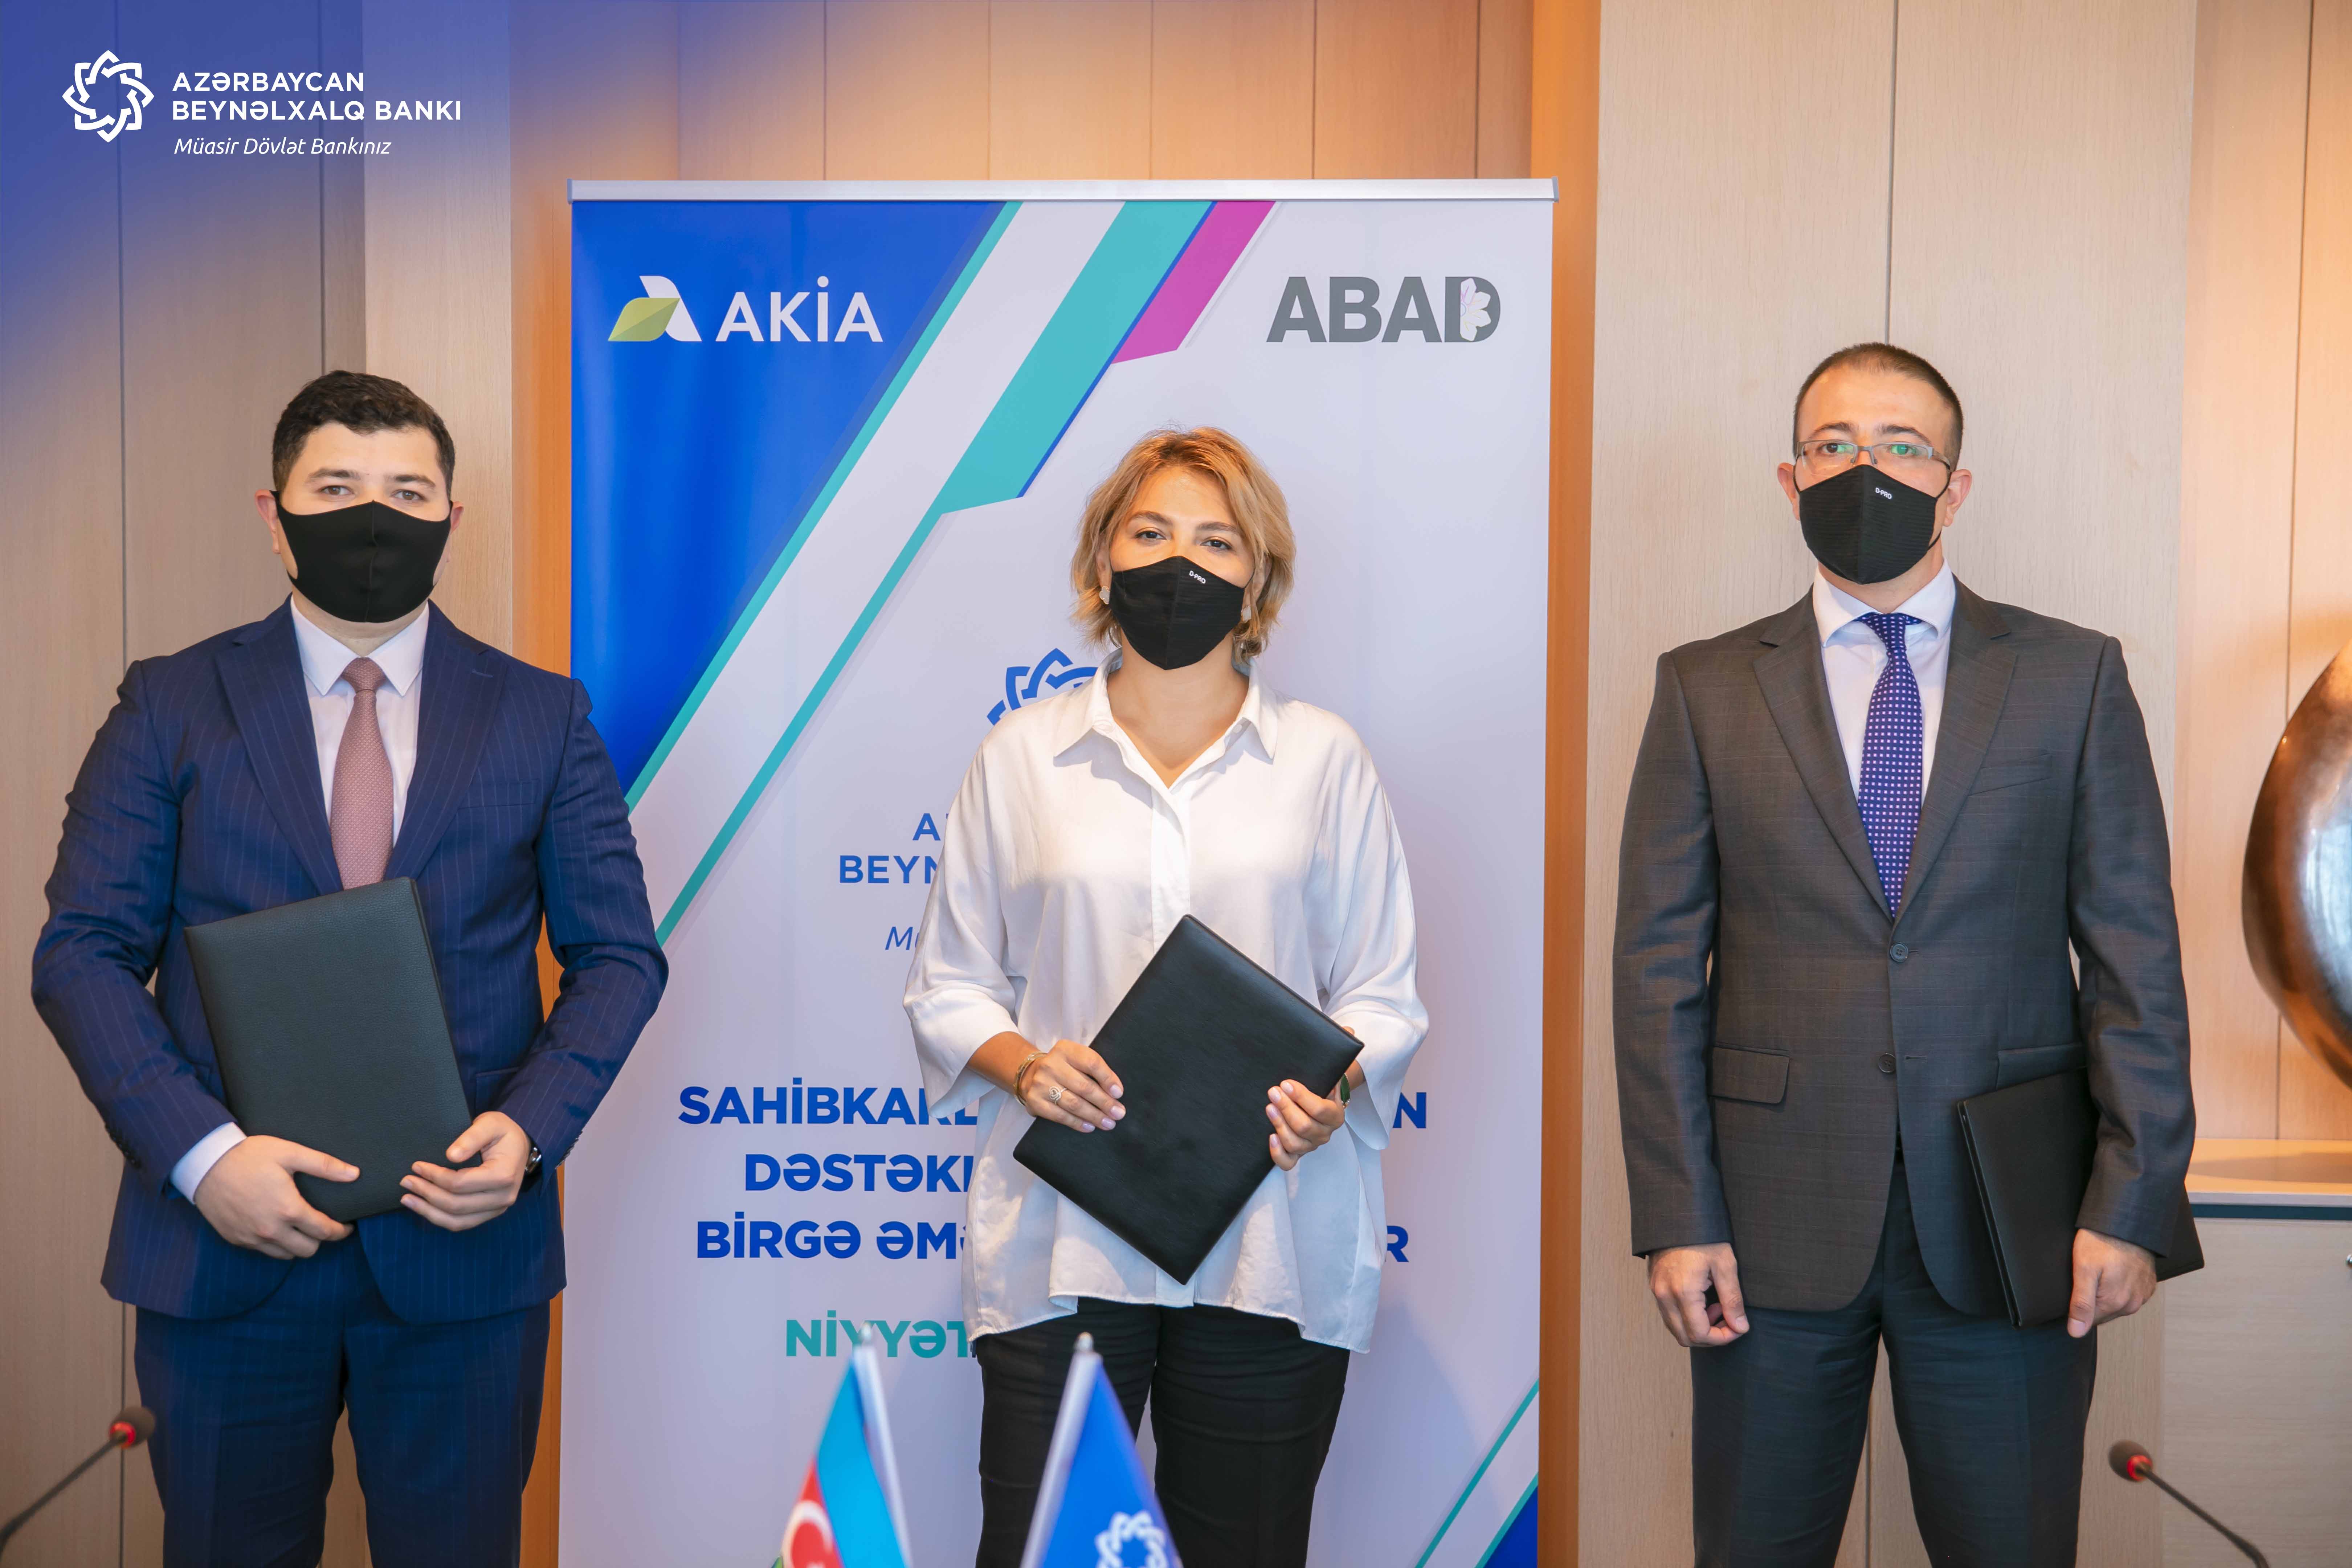 Azərbaycan  Beynəlxalq Bankı, ABAD və AKİA-dan  aqrar sektora birgə dəstək